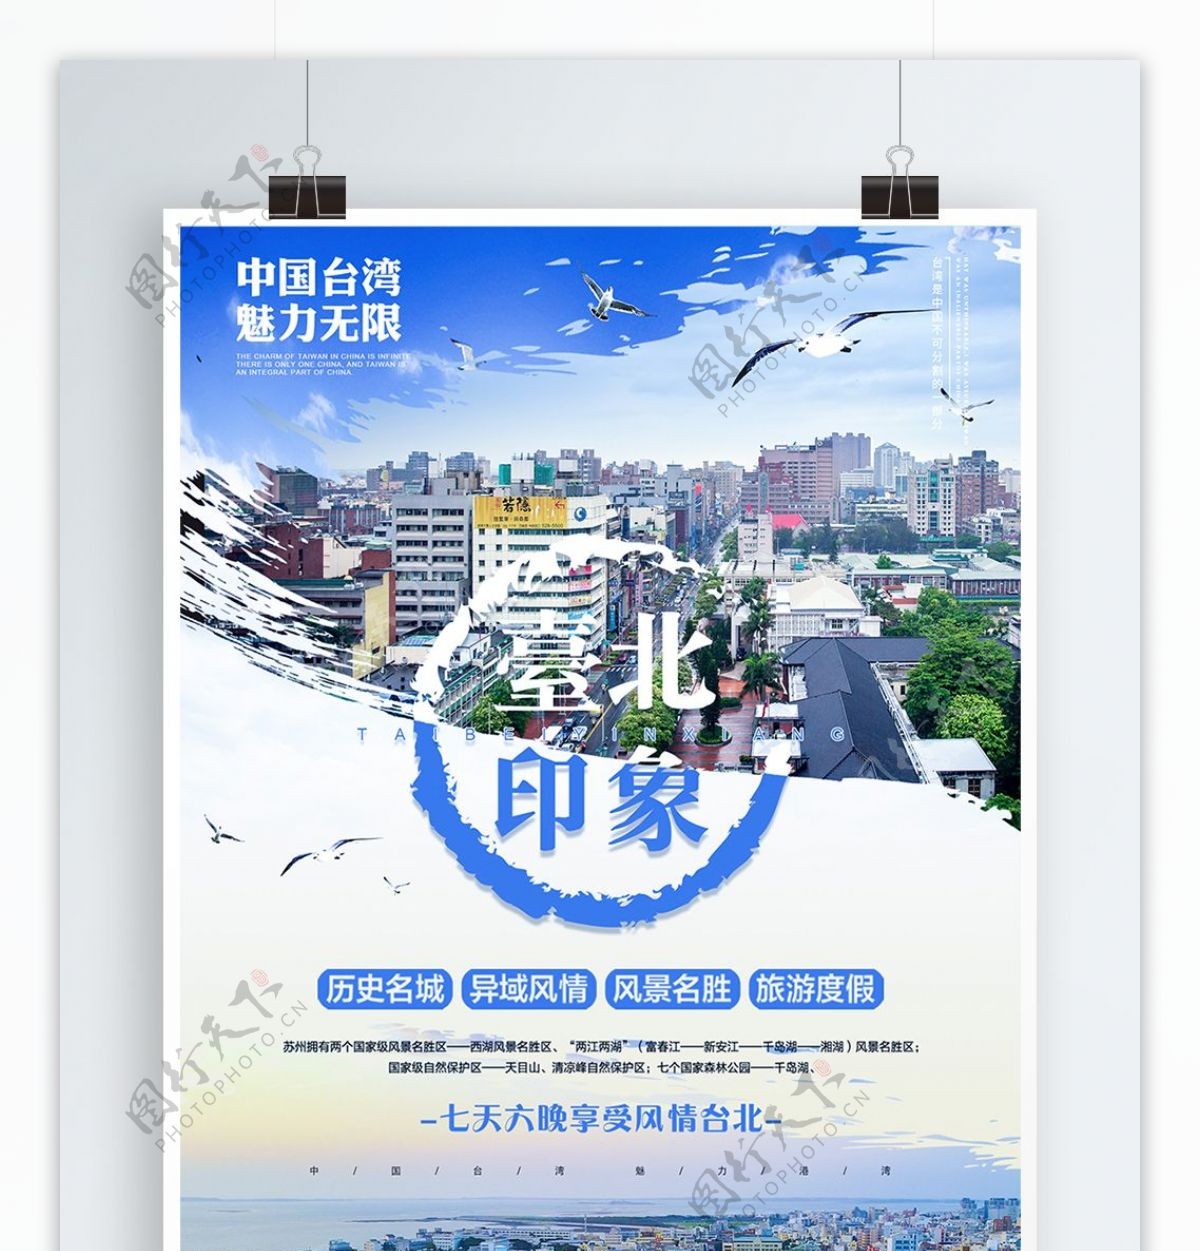 原创清新简约台北印象宣传旅游海报